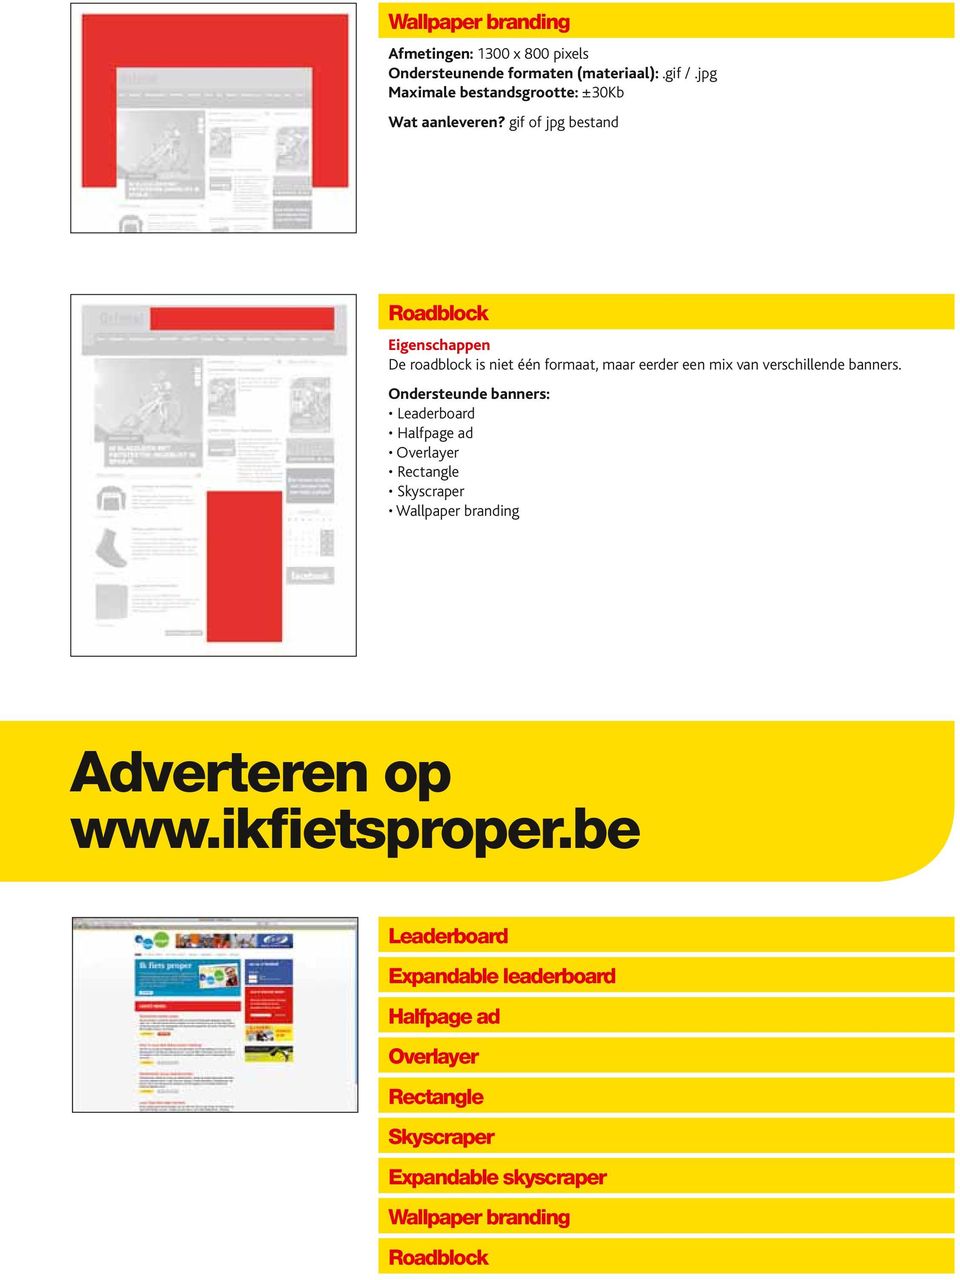 Ondersteunde banners: Leaderboard Halfpage ad Overlayer Rectangle Skyscraper Wallpaper branding Adverteren op www.